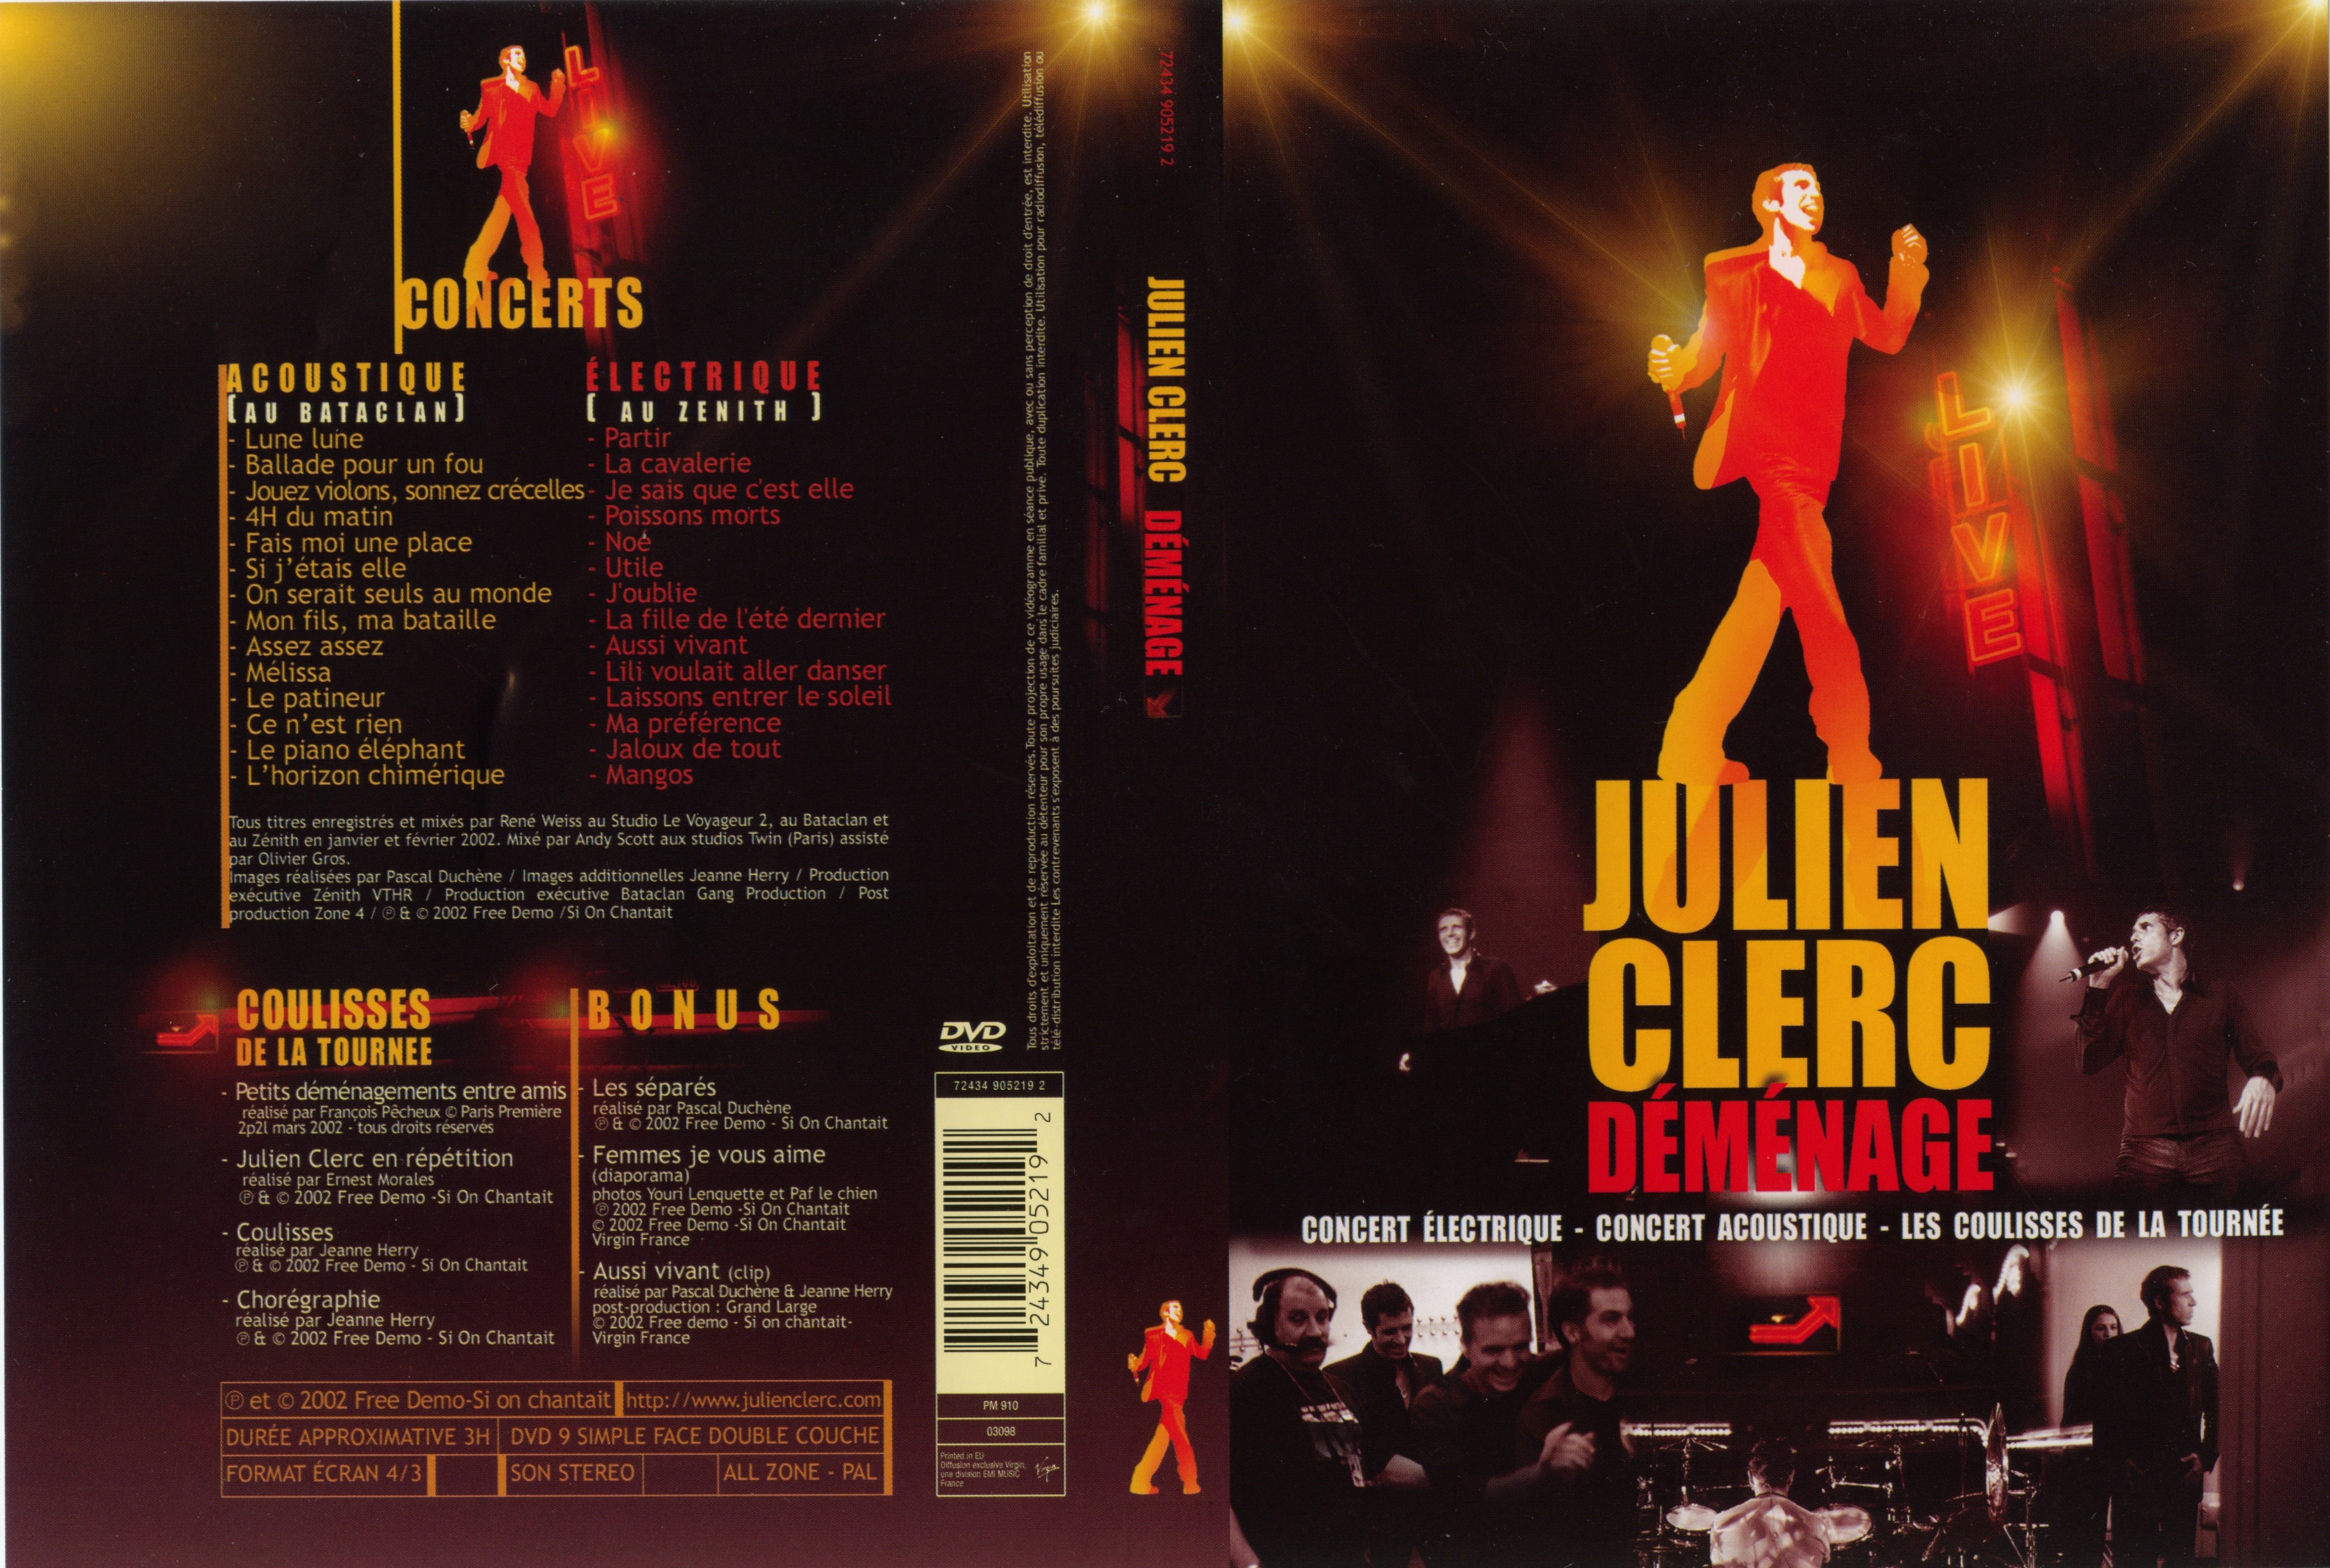 Jaquette DVD Julien Clerc dmnage